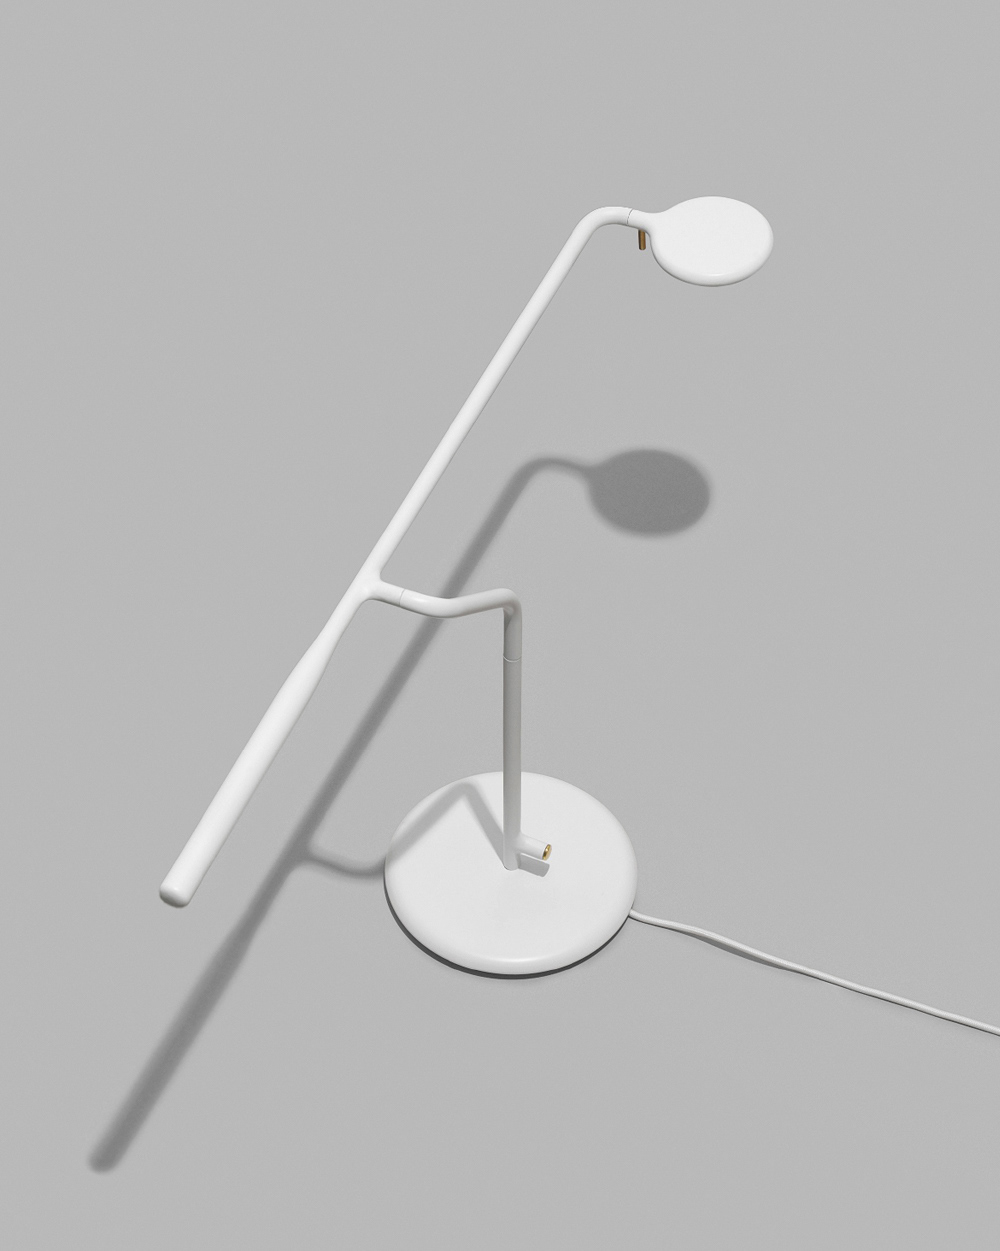 industrial design  product design  normann copenhagen Scandinavian design minimal Lighting Design  lamp design Lamp designstudio designer